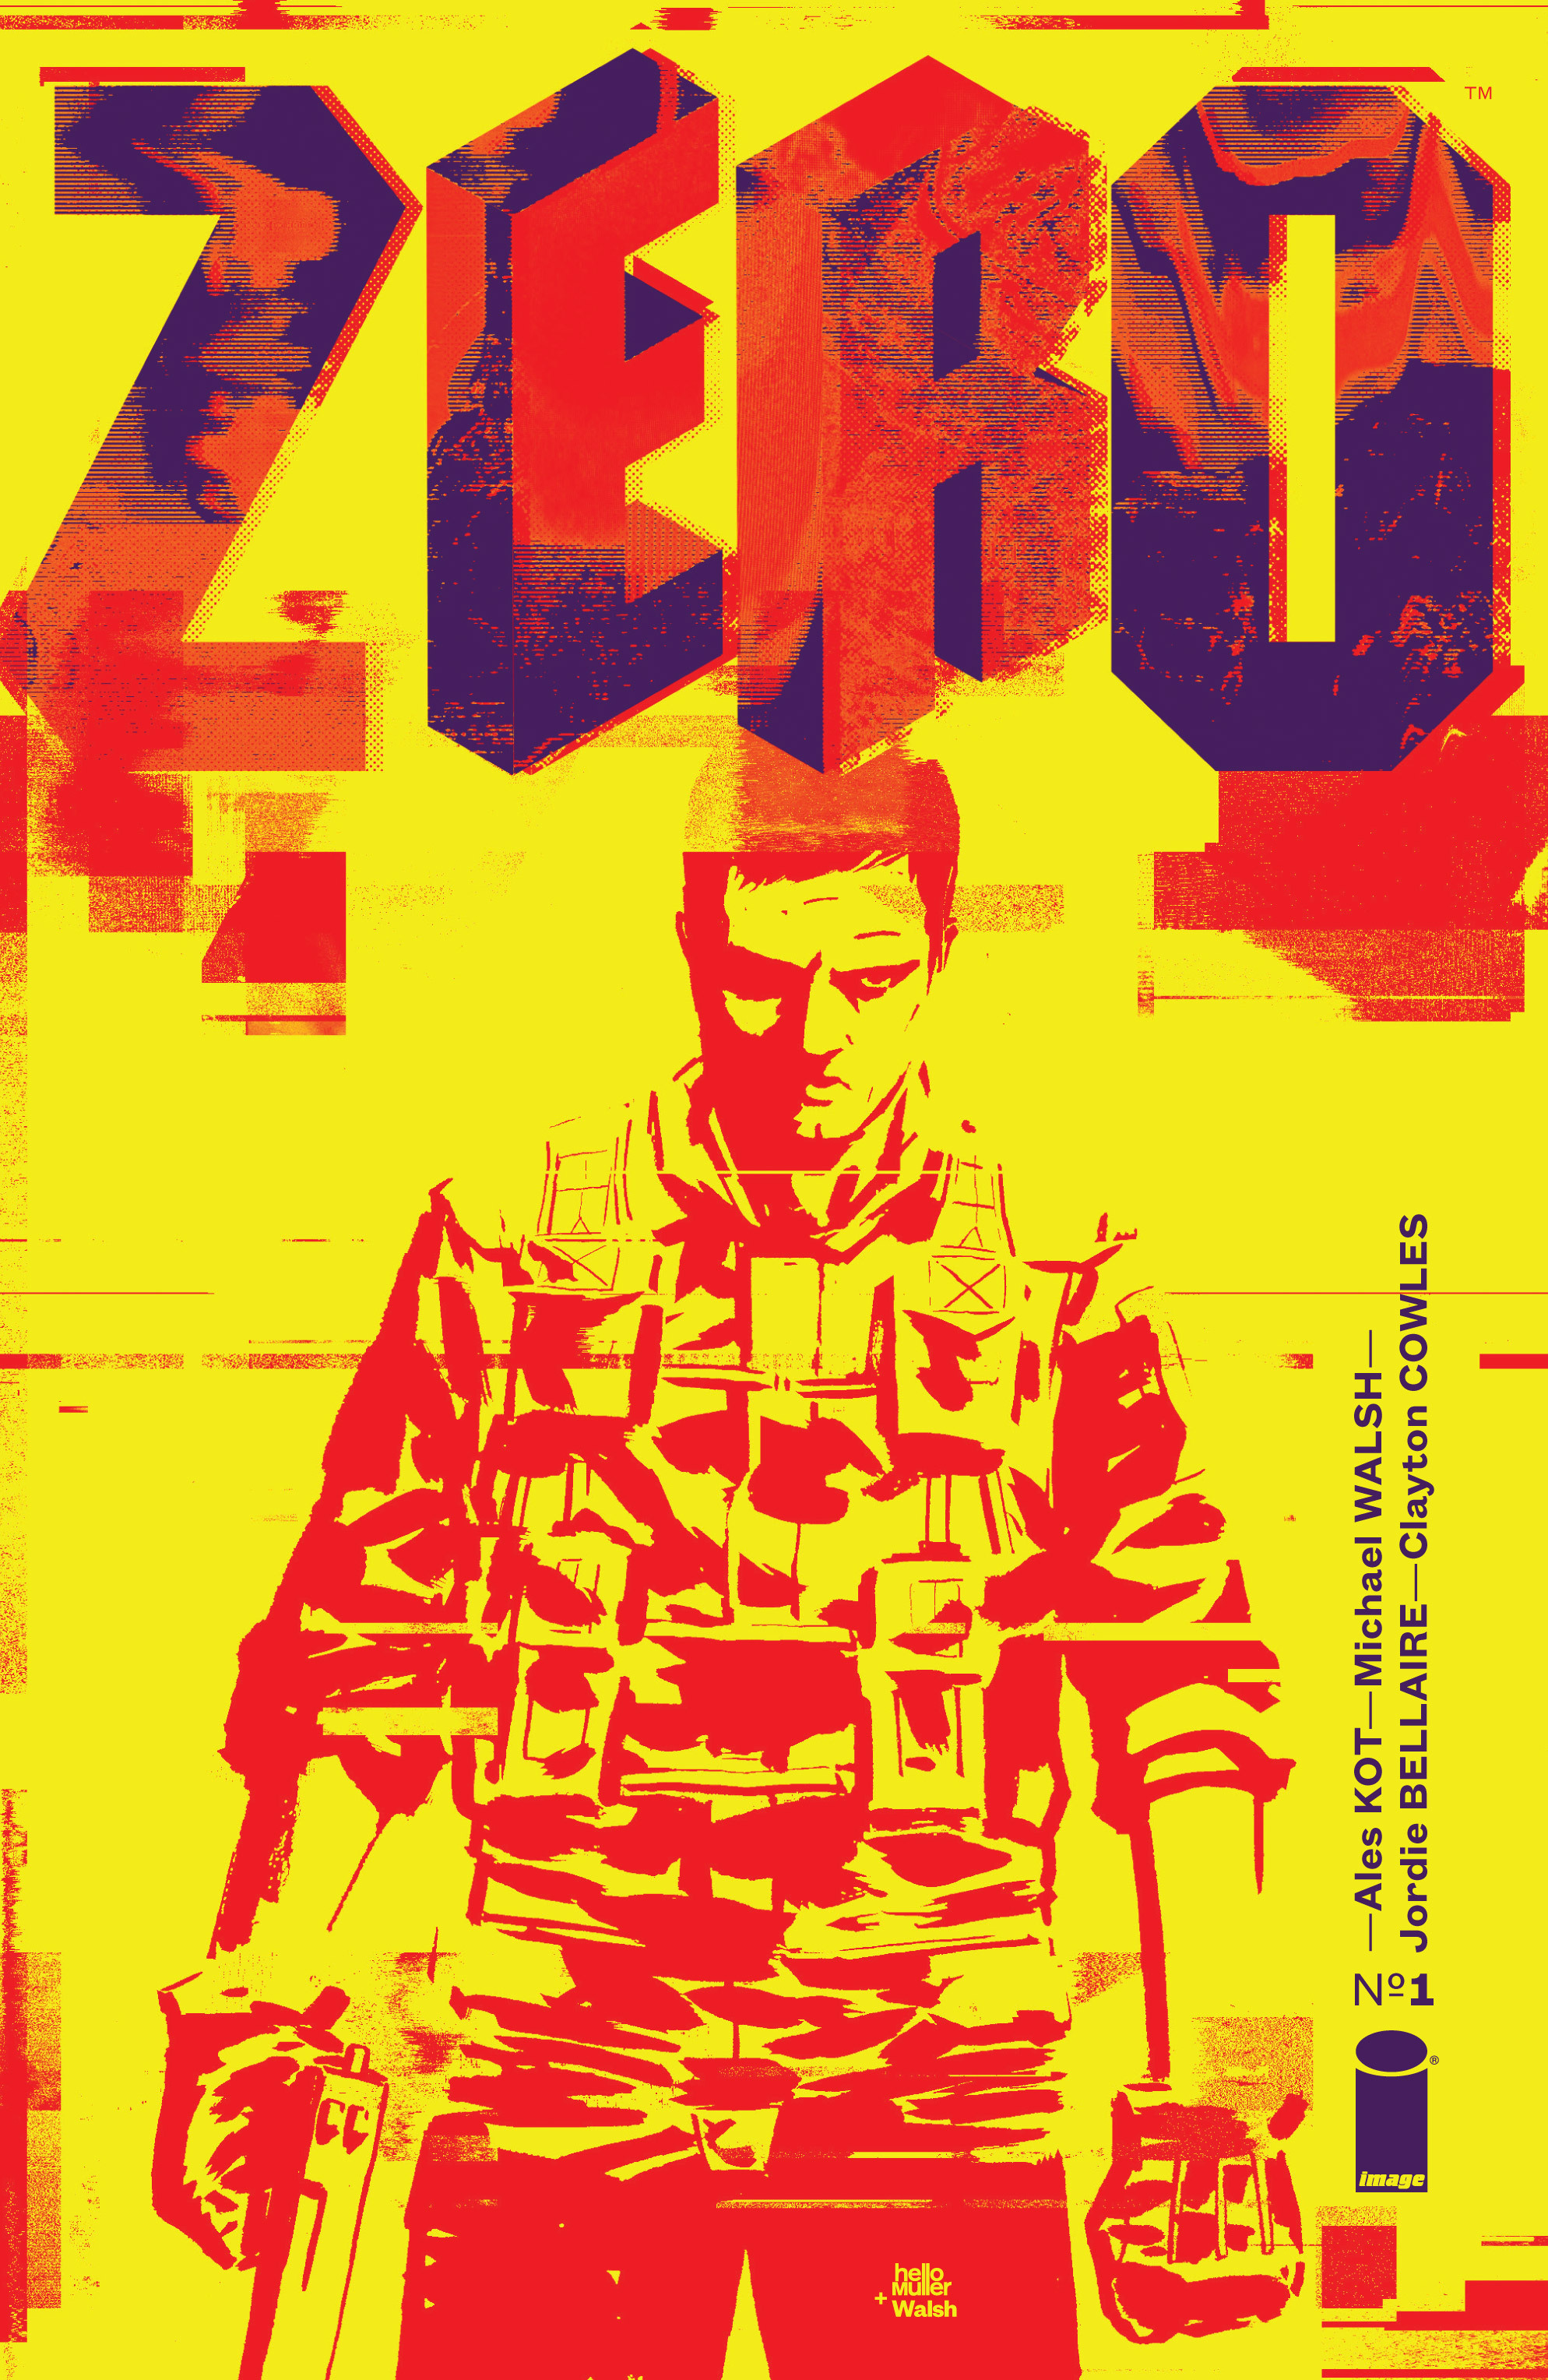 Read online Zero comic -  Issue #1 - 1